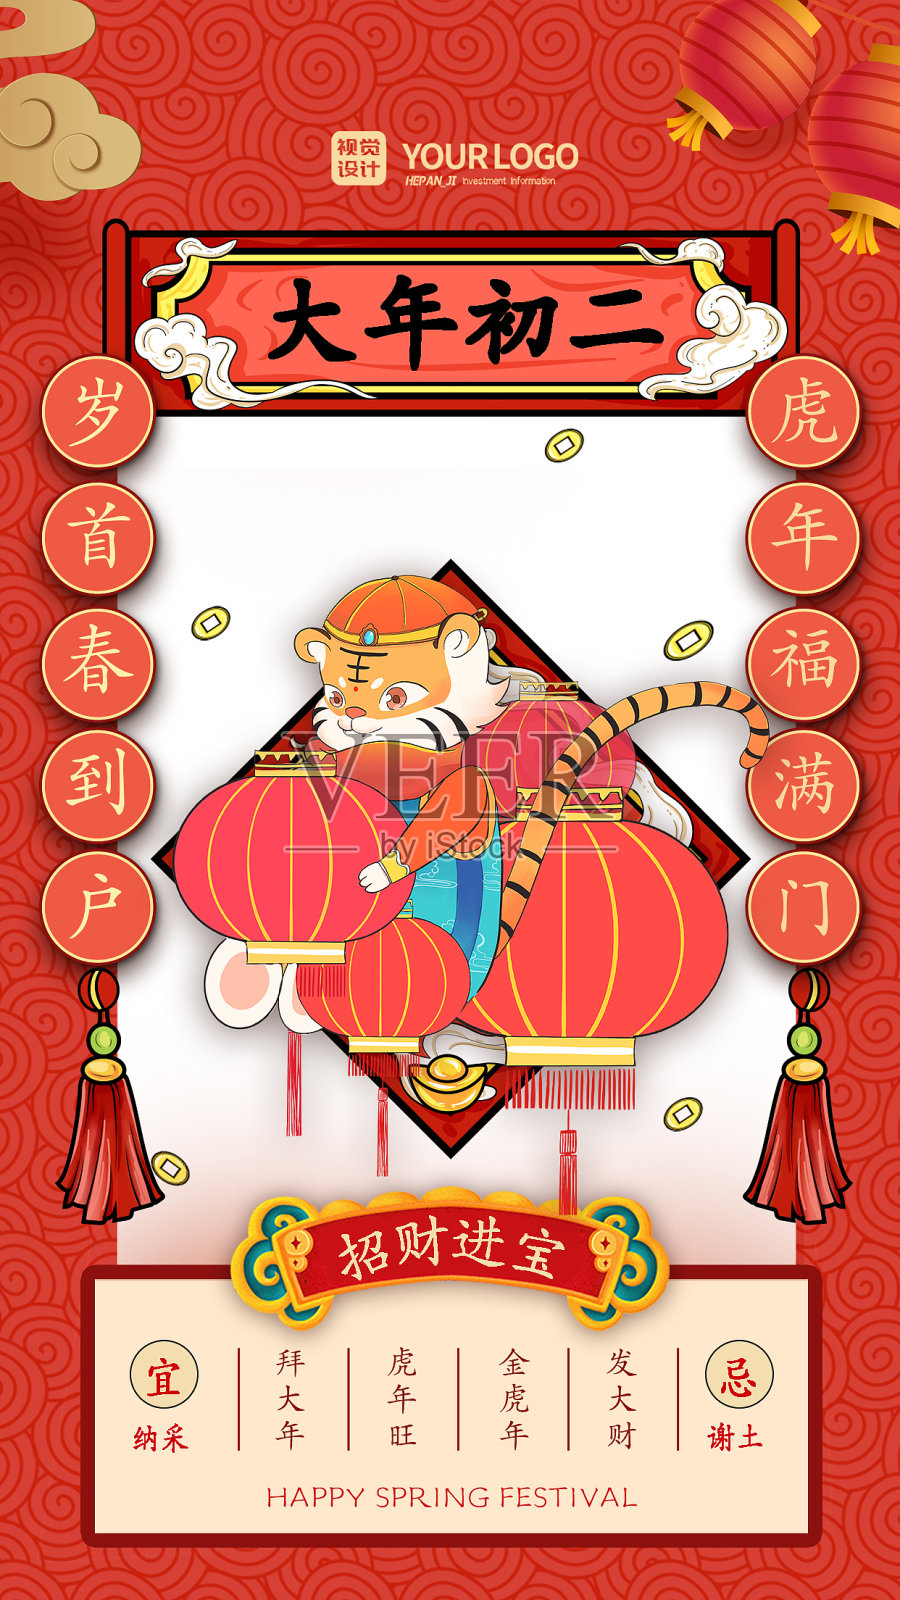 红色经典国潮风大年初二虎年春节系列手机海报设计模板素材